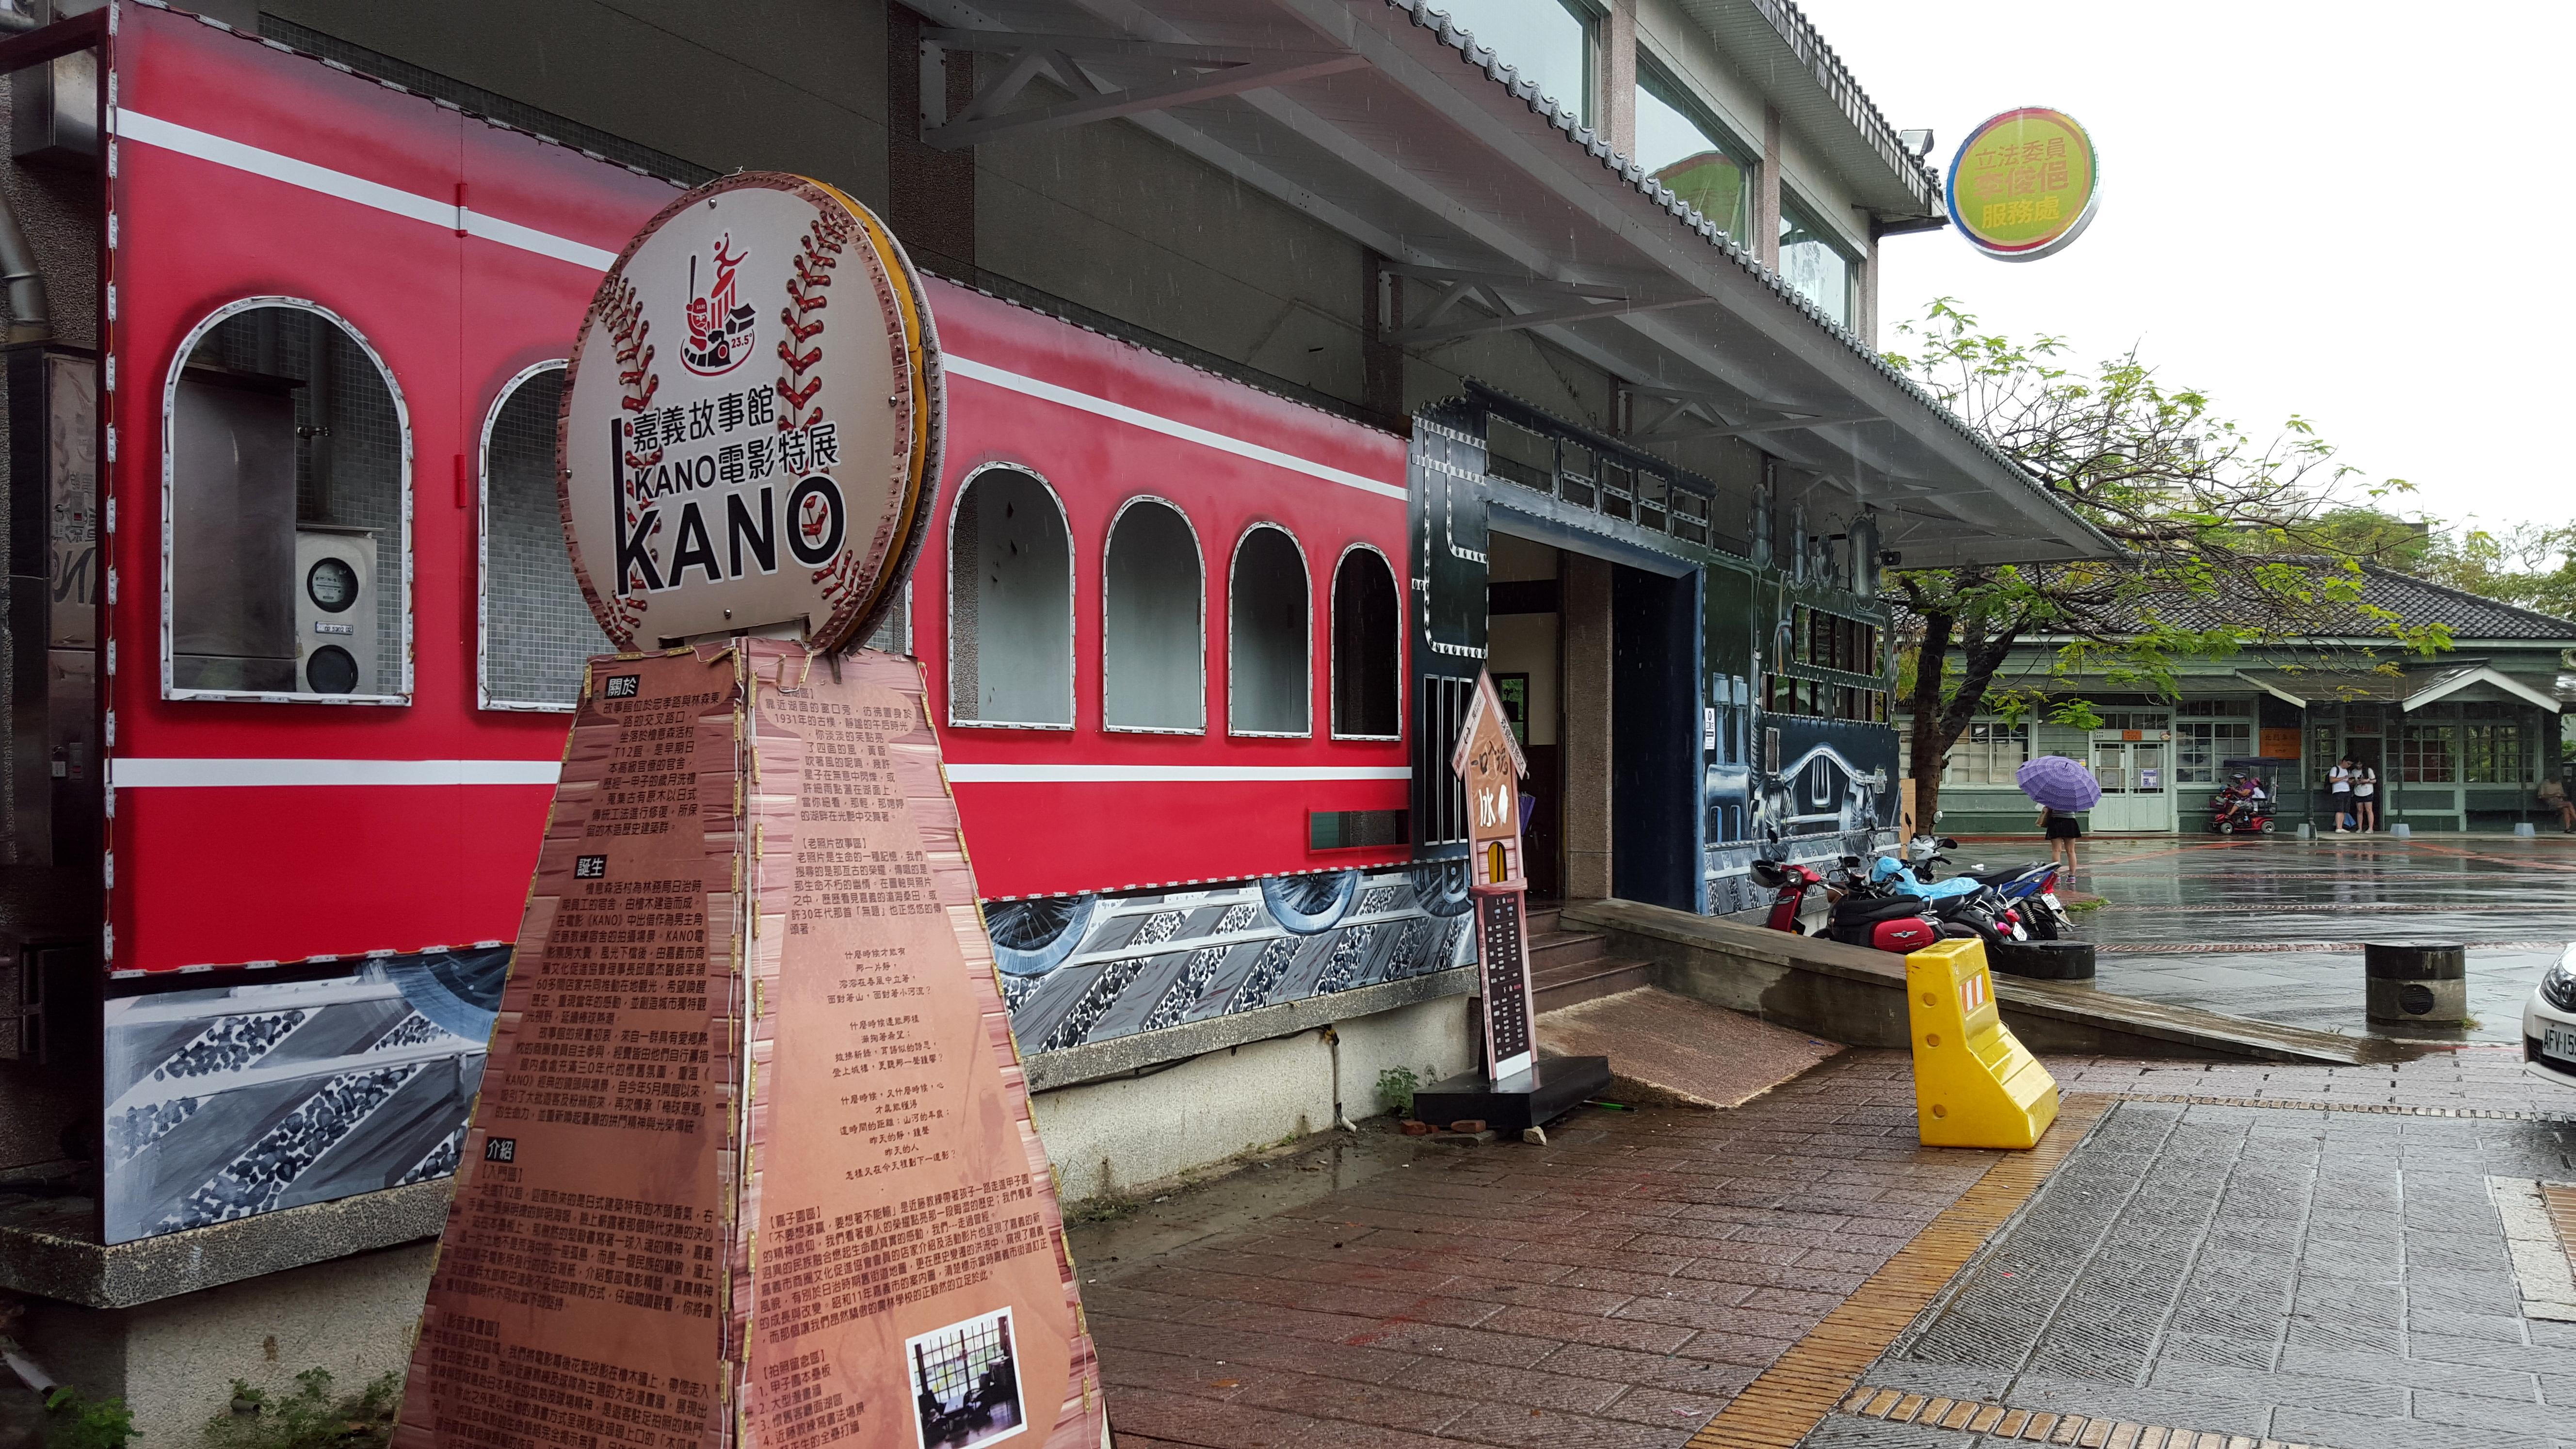 因為KANO電影爆紅而成立的KANO棒球故事館。